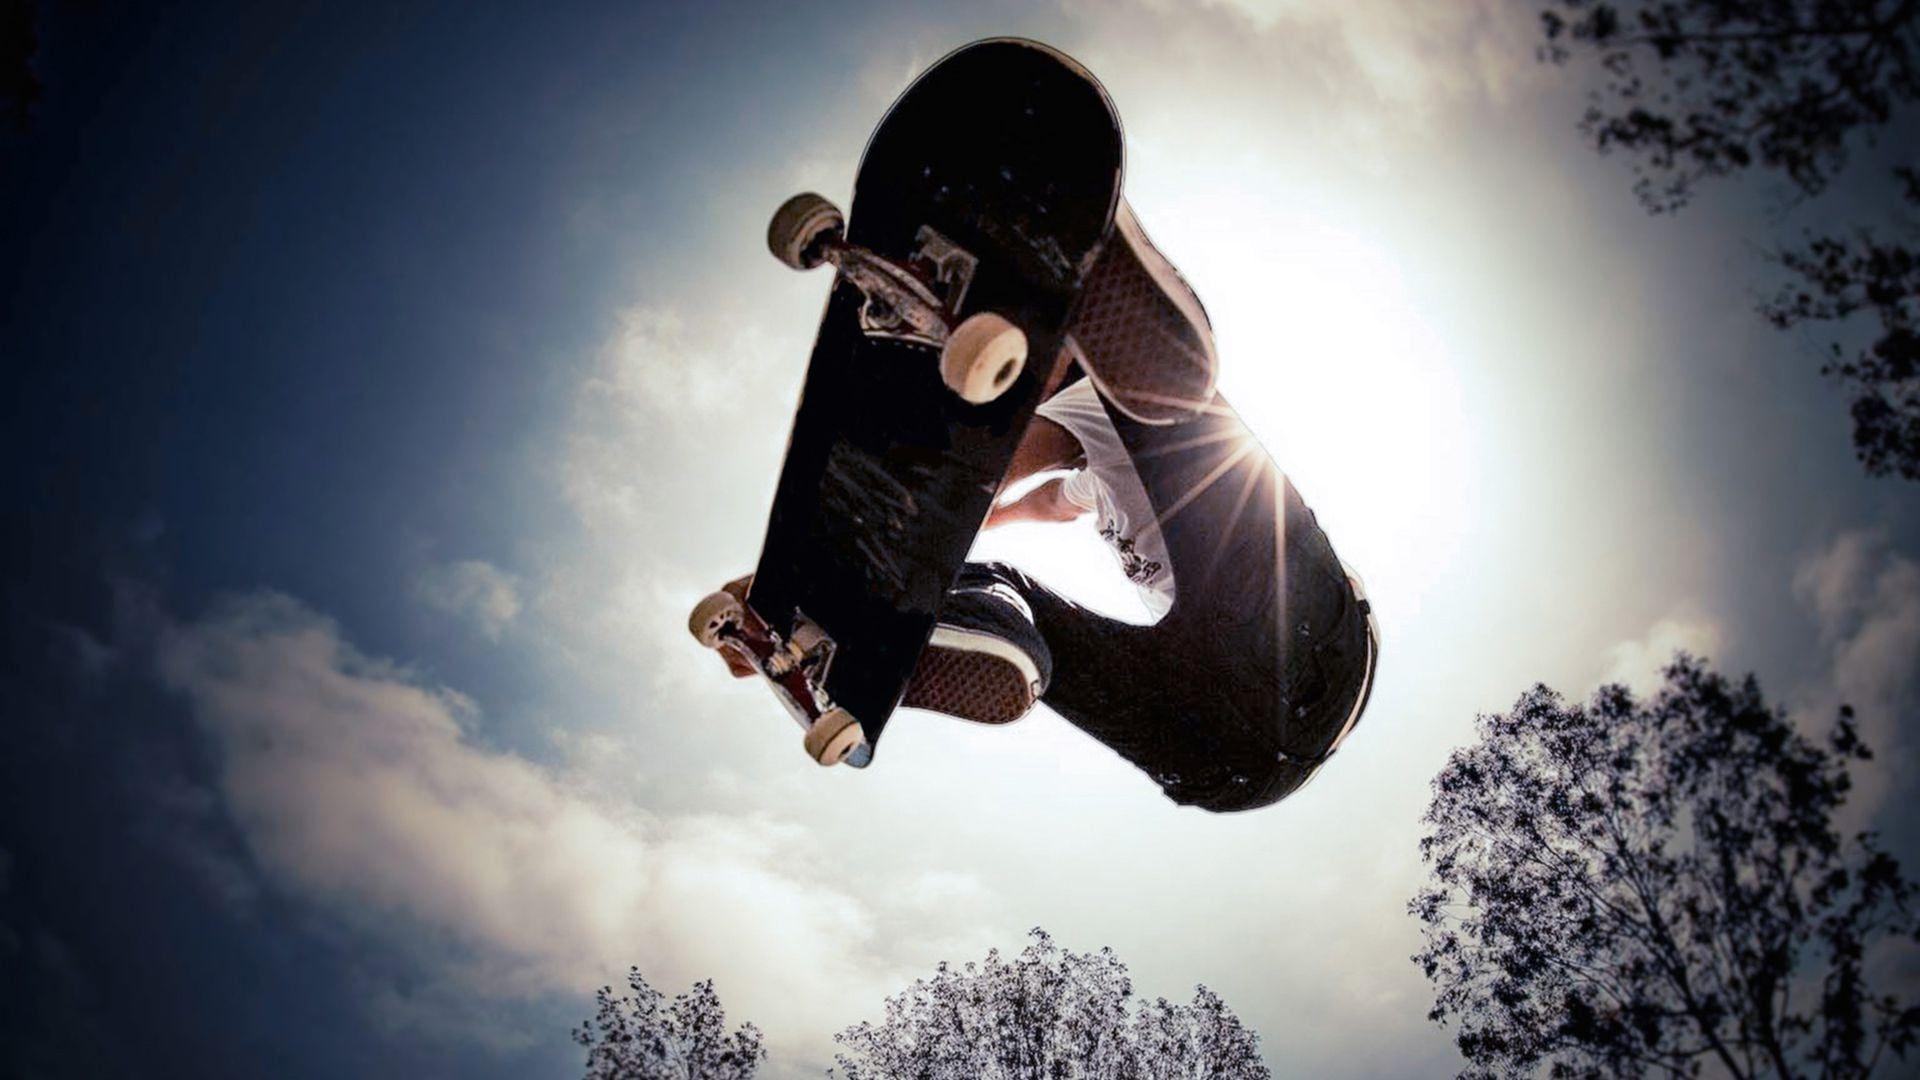 Skateboarding wallpaper HD free Download